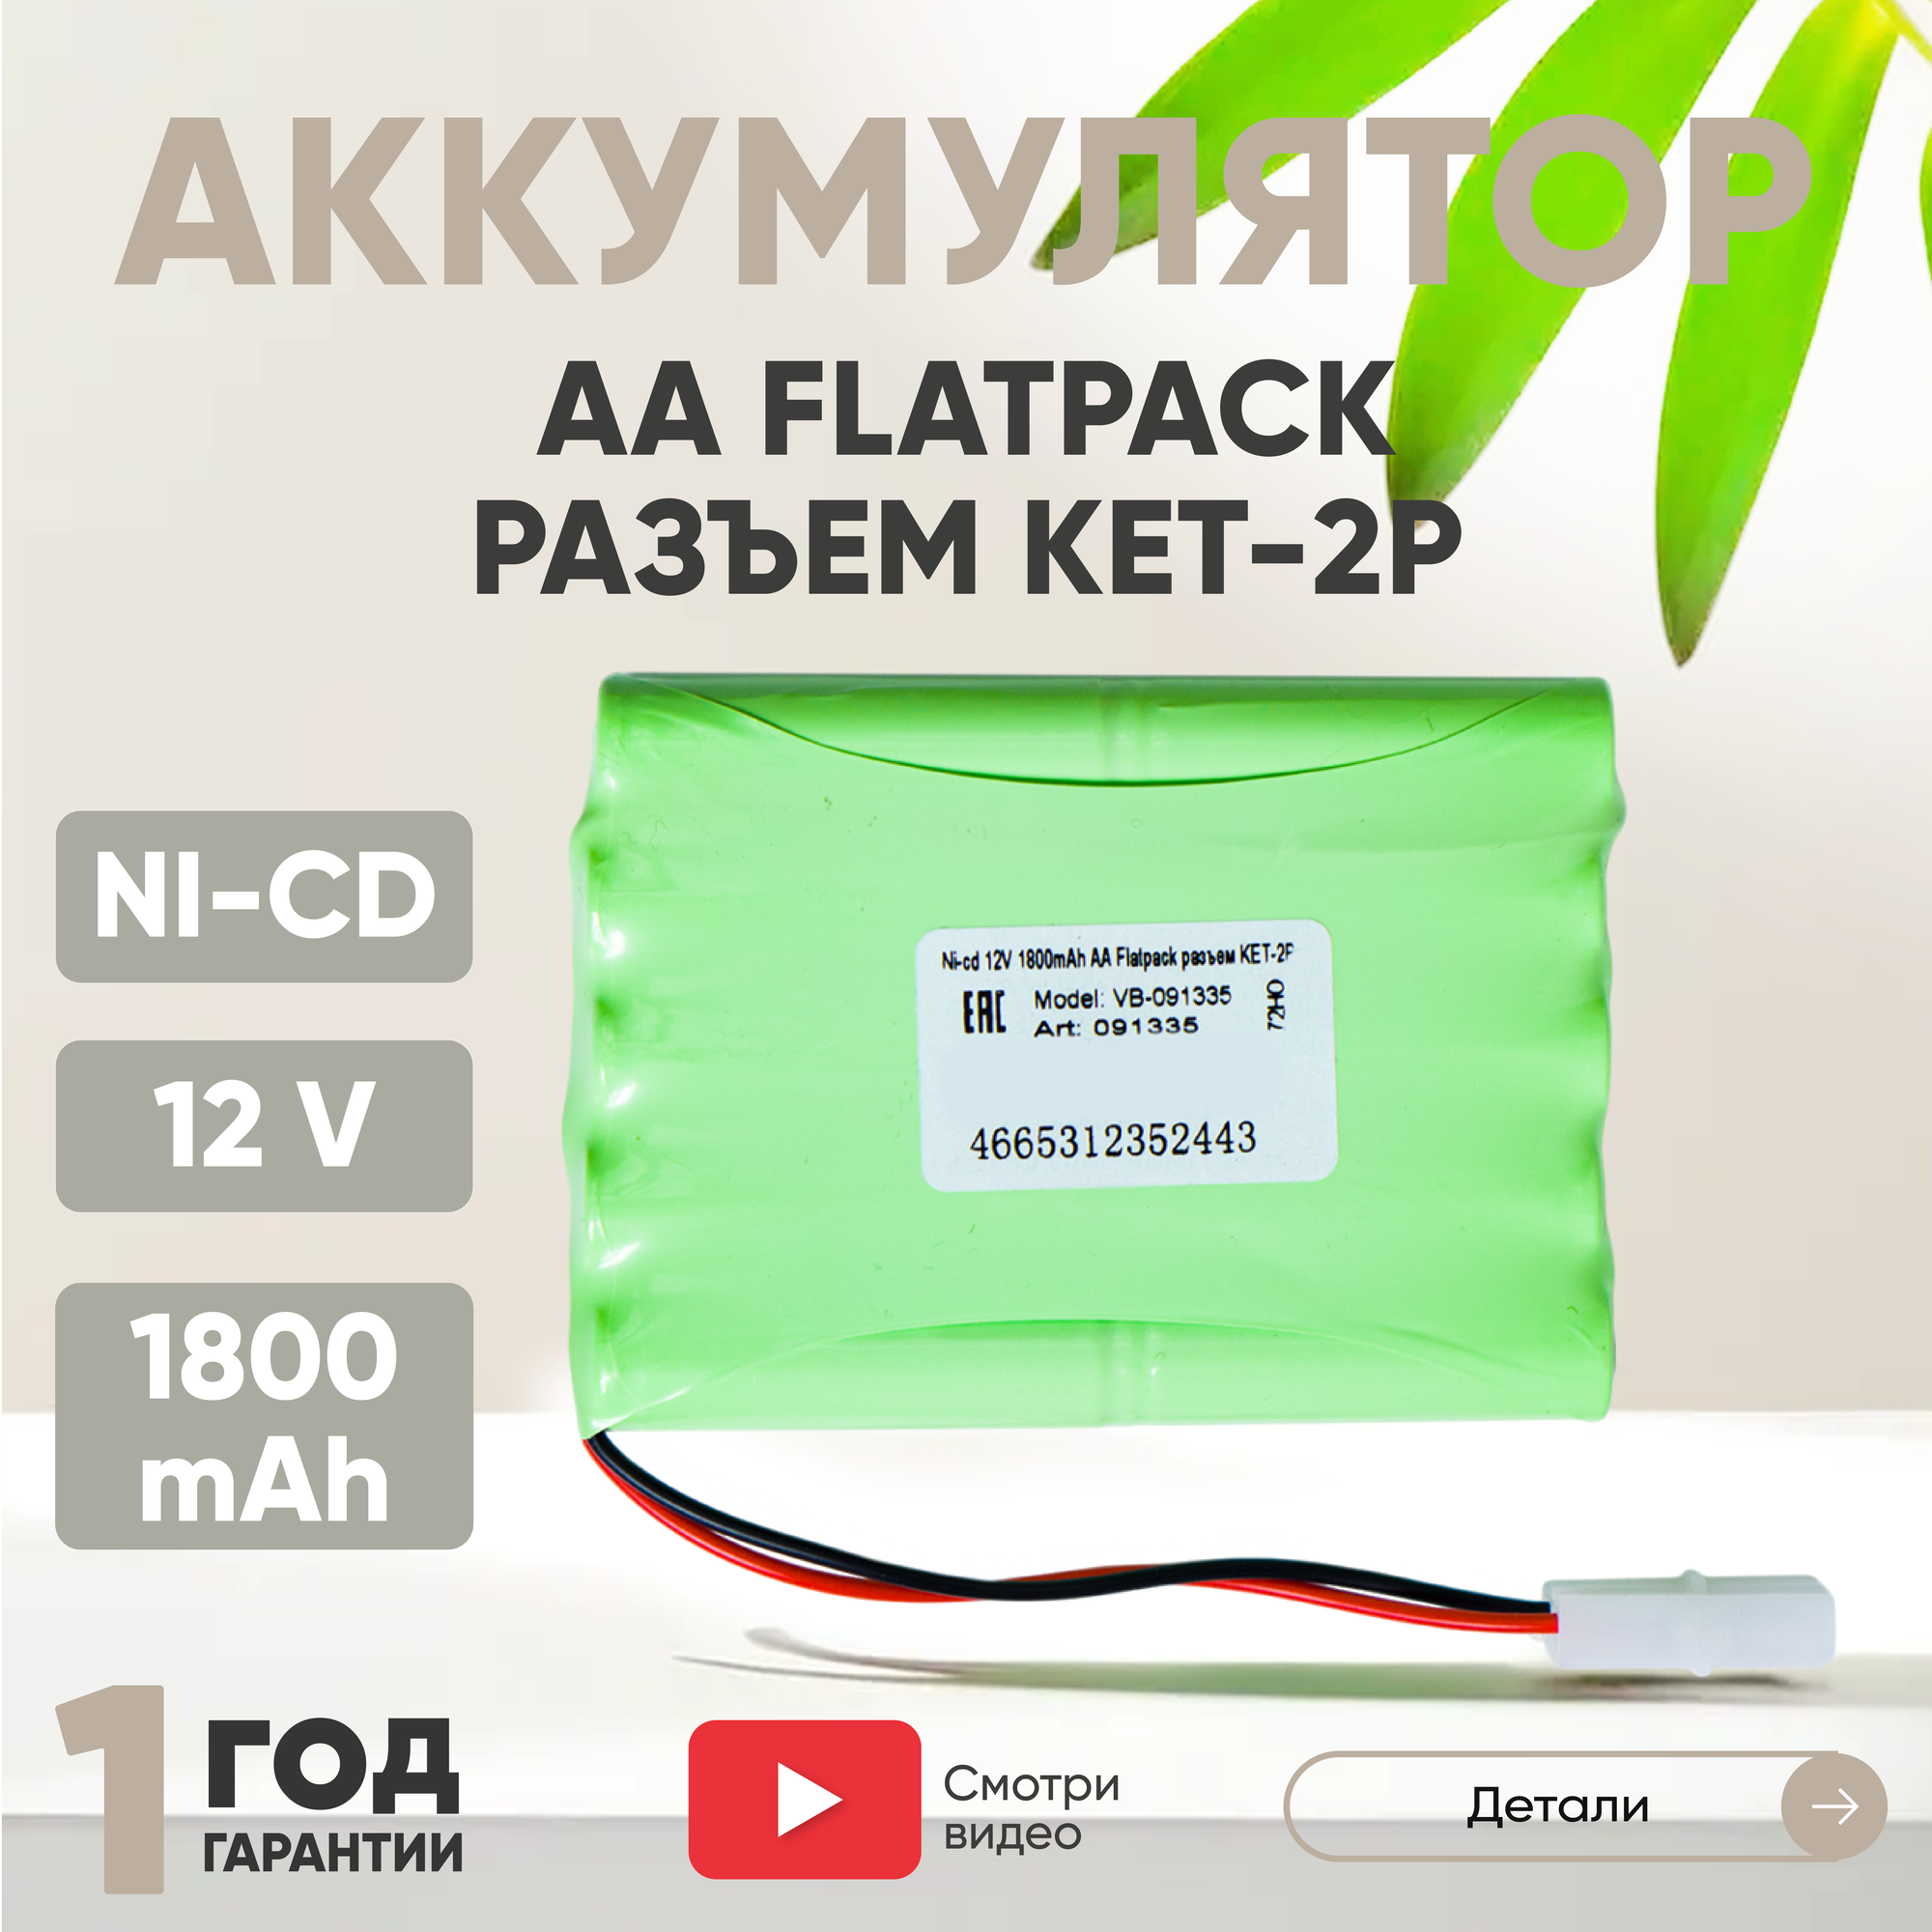 Аккумуляторная батарея (АКБ, аккумулятор) для радиоуправляемых игрушек / моделей, AA Flatpack, разъем KET-2P, 12В, 1800мАч, Ni-Cd